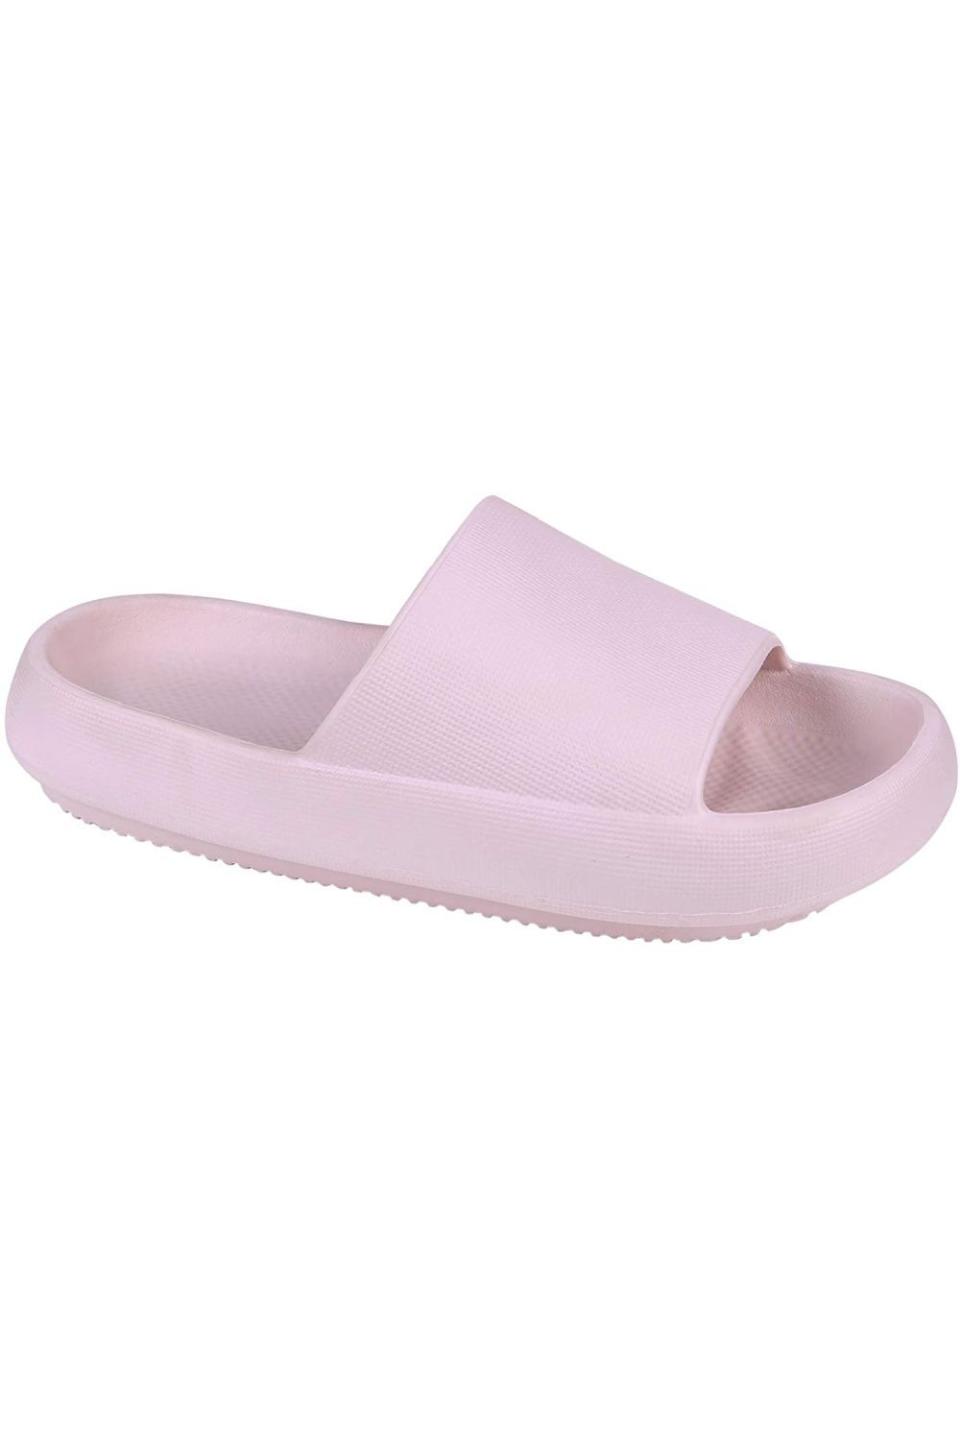 11) Shower Sandal Slippers Quick Drying Bathroom Slippers